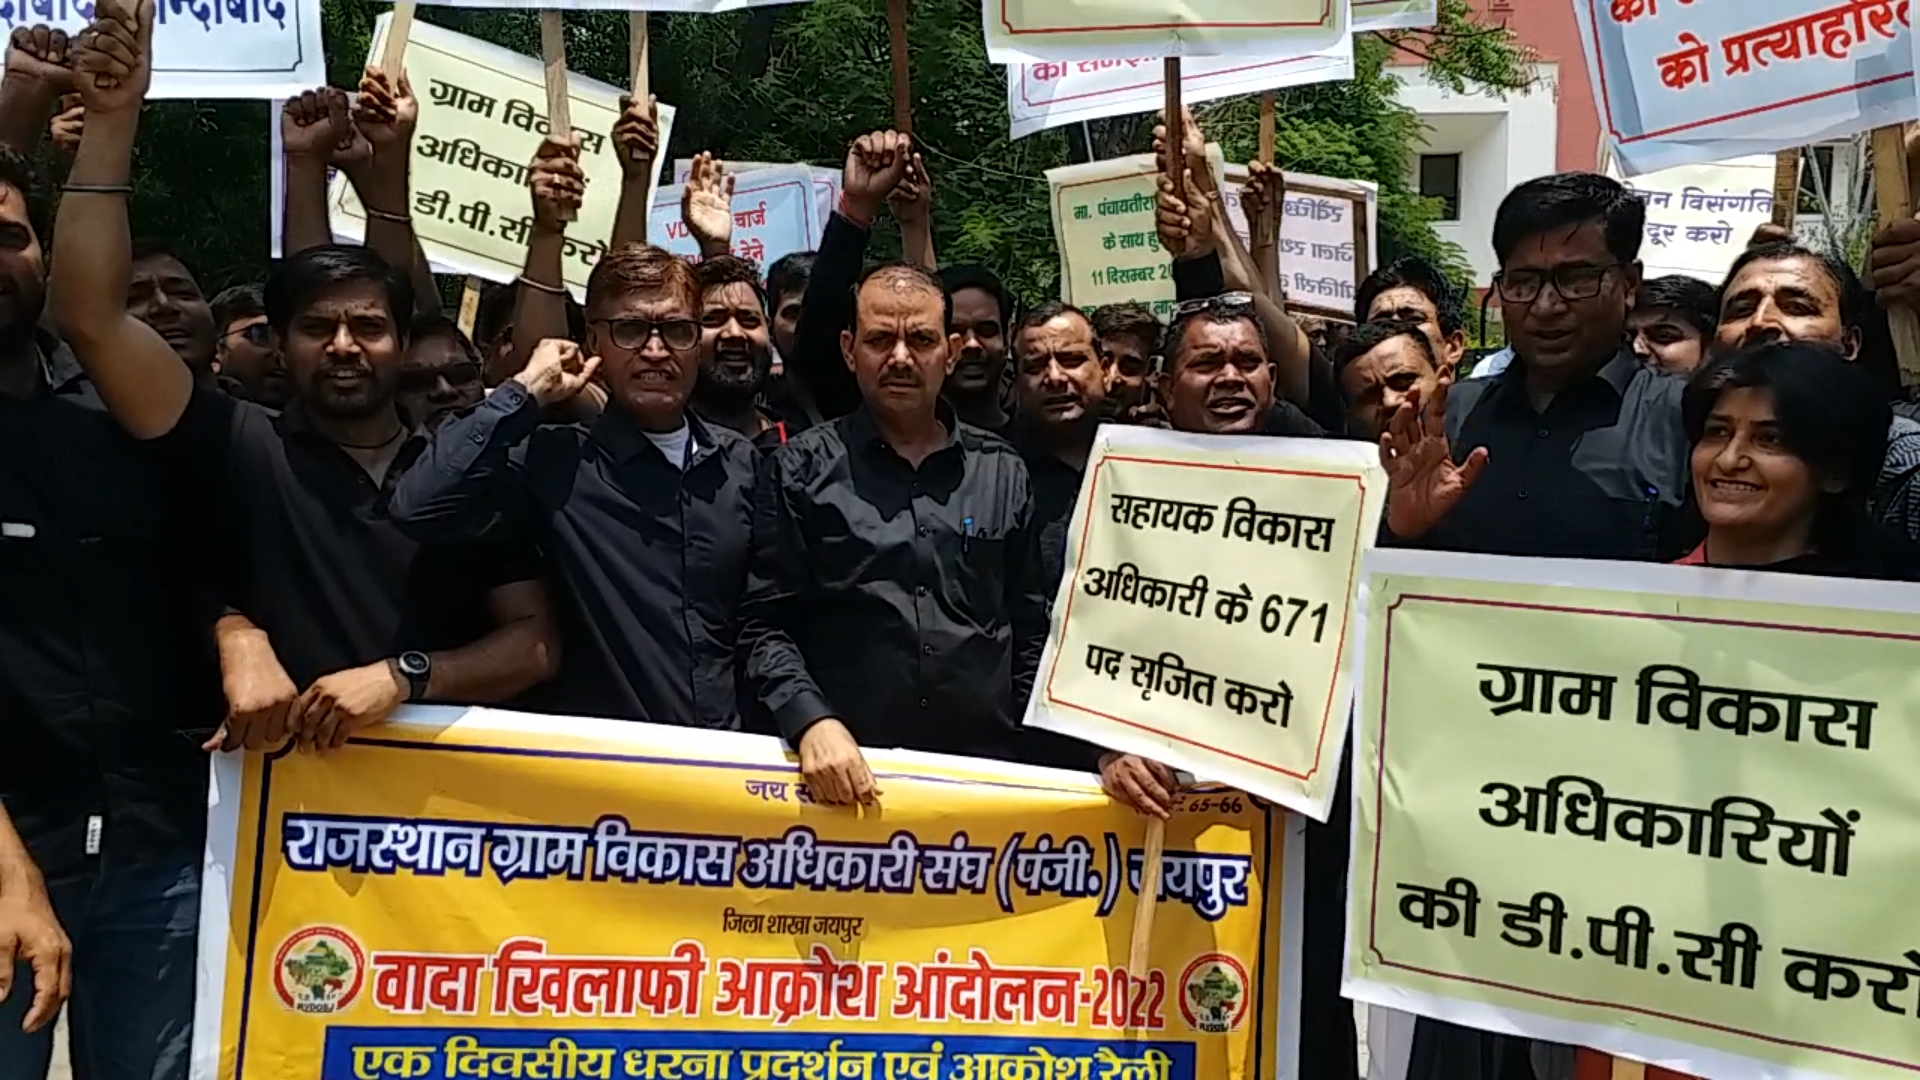 Angry Anganwadi workers protested